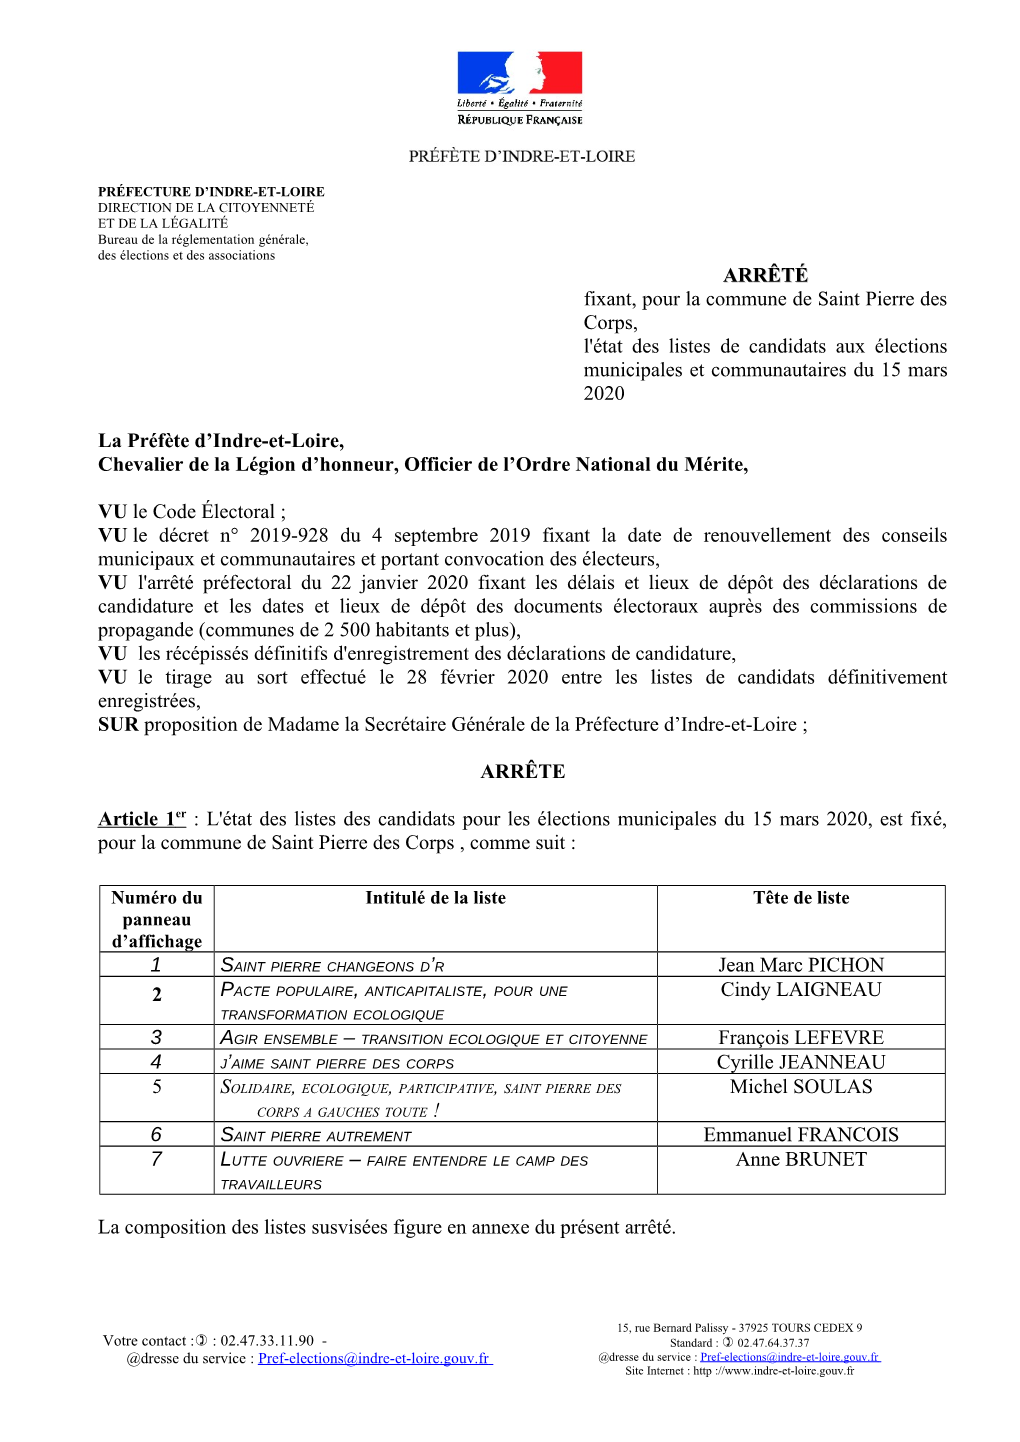 ARRÊTÉ Fixant, Pour La Commune De Saint Pierre Des Corps, L'état Des Listes De Candidats Aux Élections Municipales Et Communautaires Du 15 Mars 2020